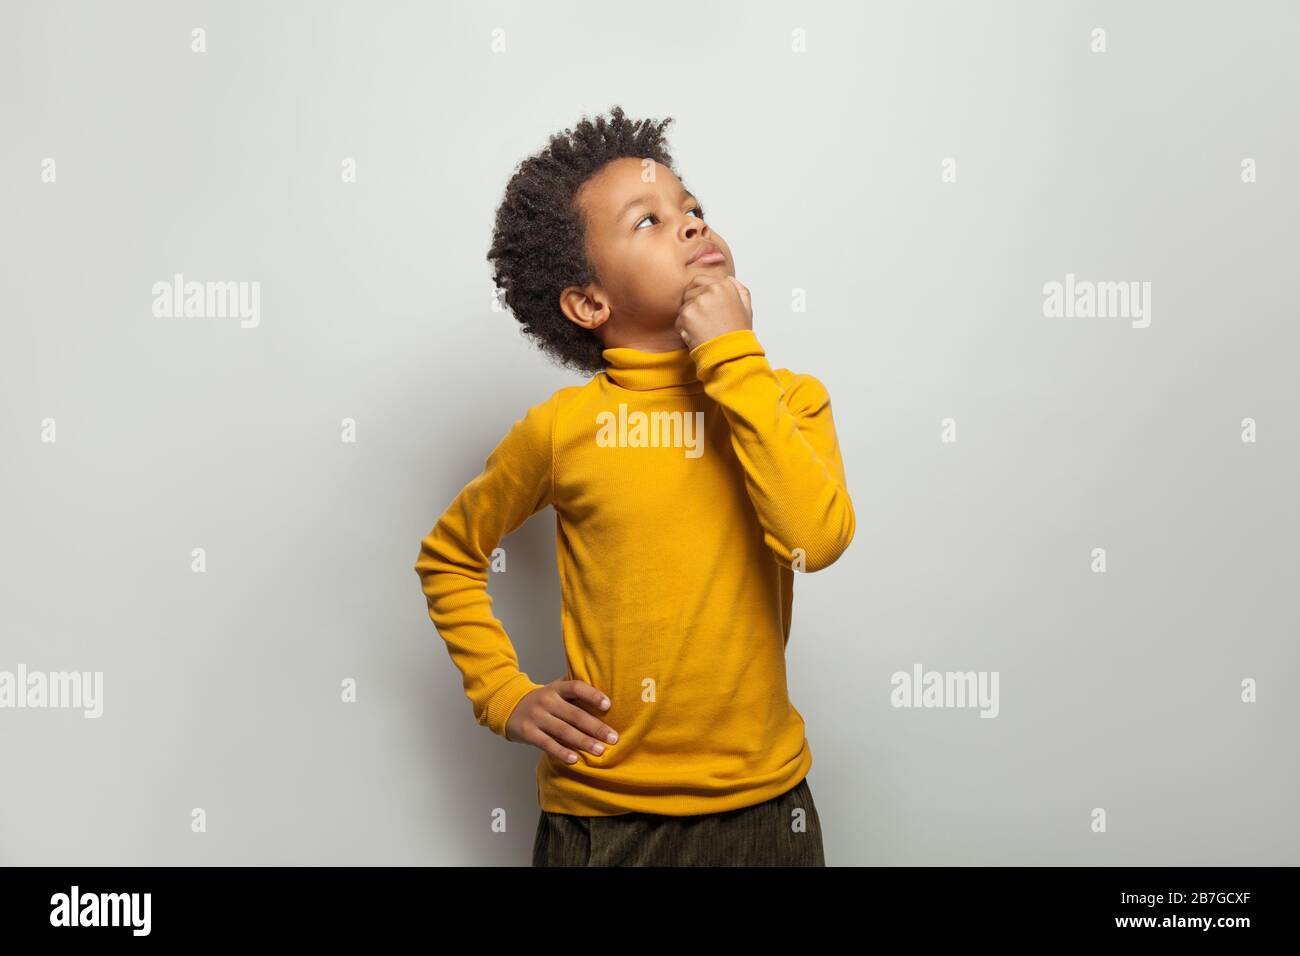 Niño negro curioso mirando hacia arriba sobre fondo blanco Foto de stock